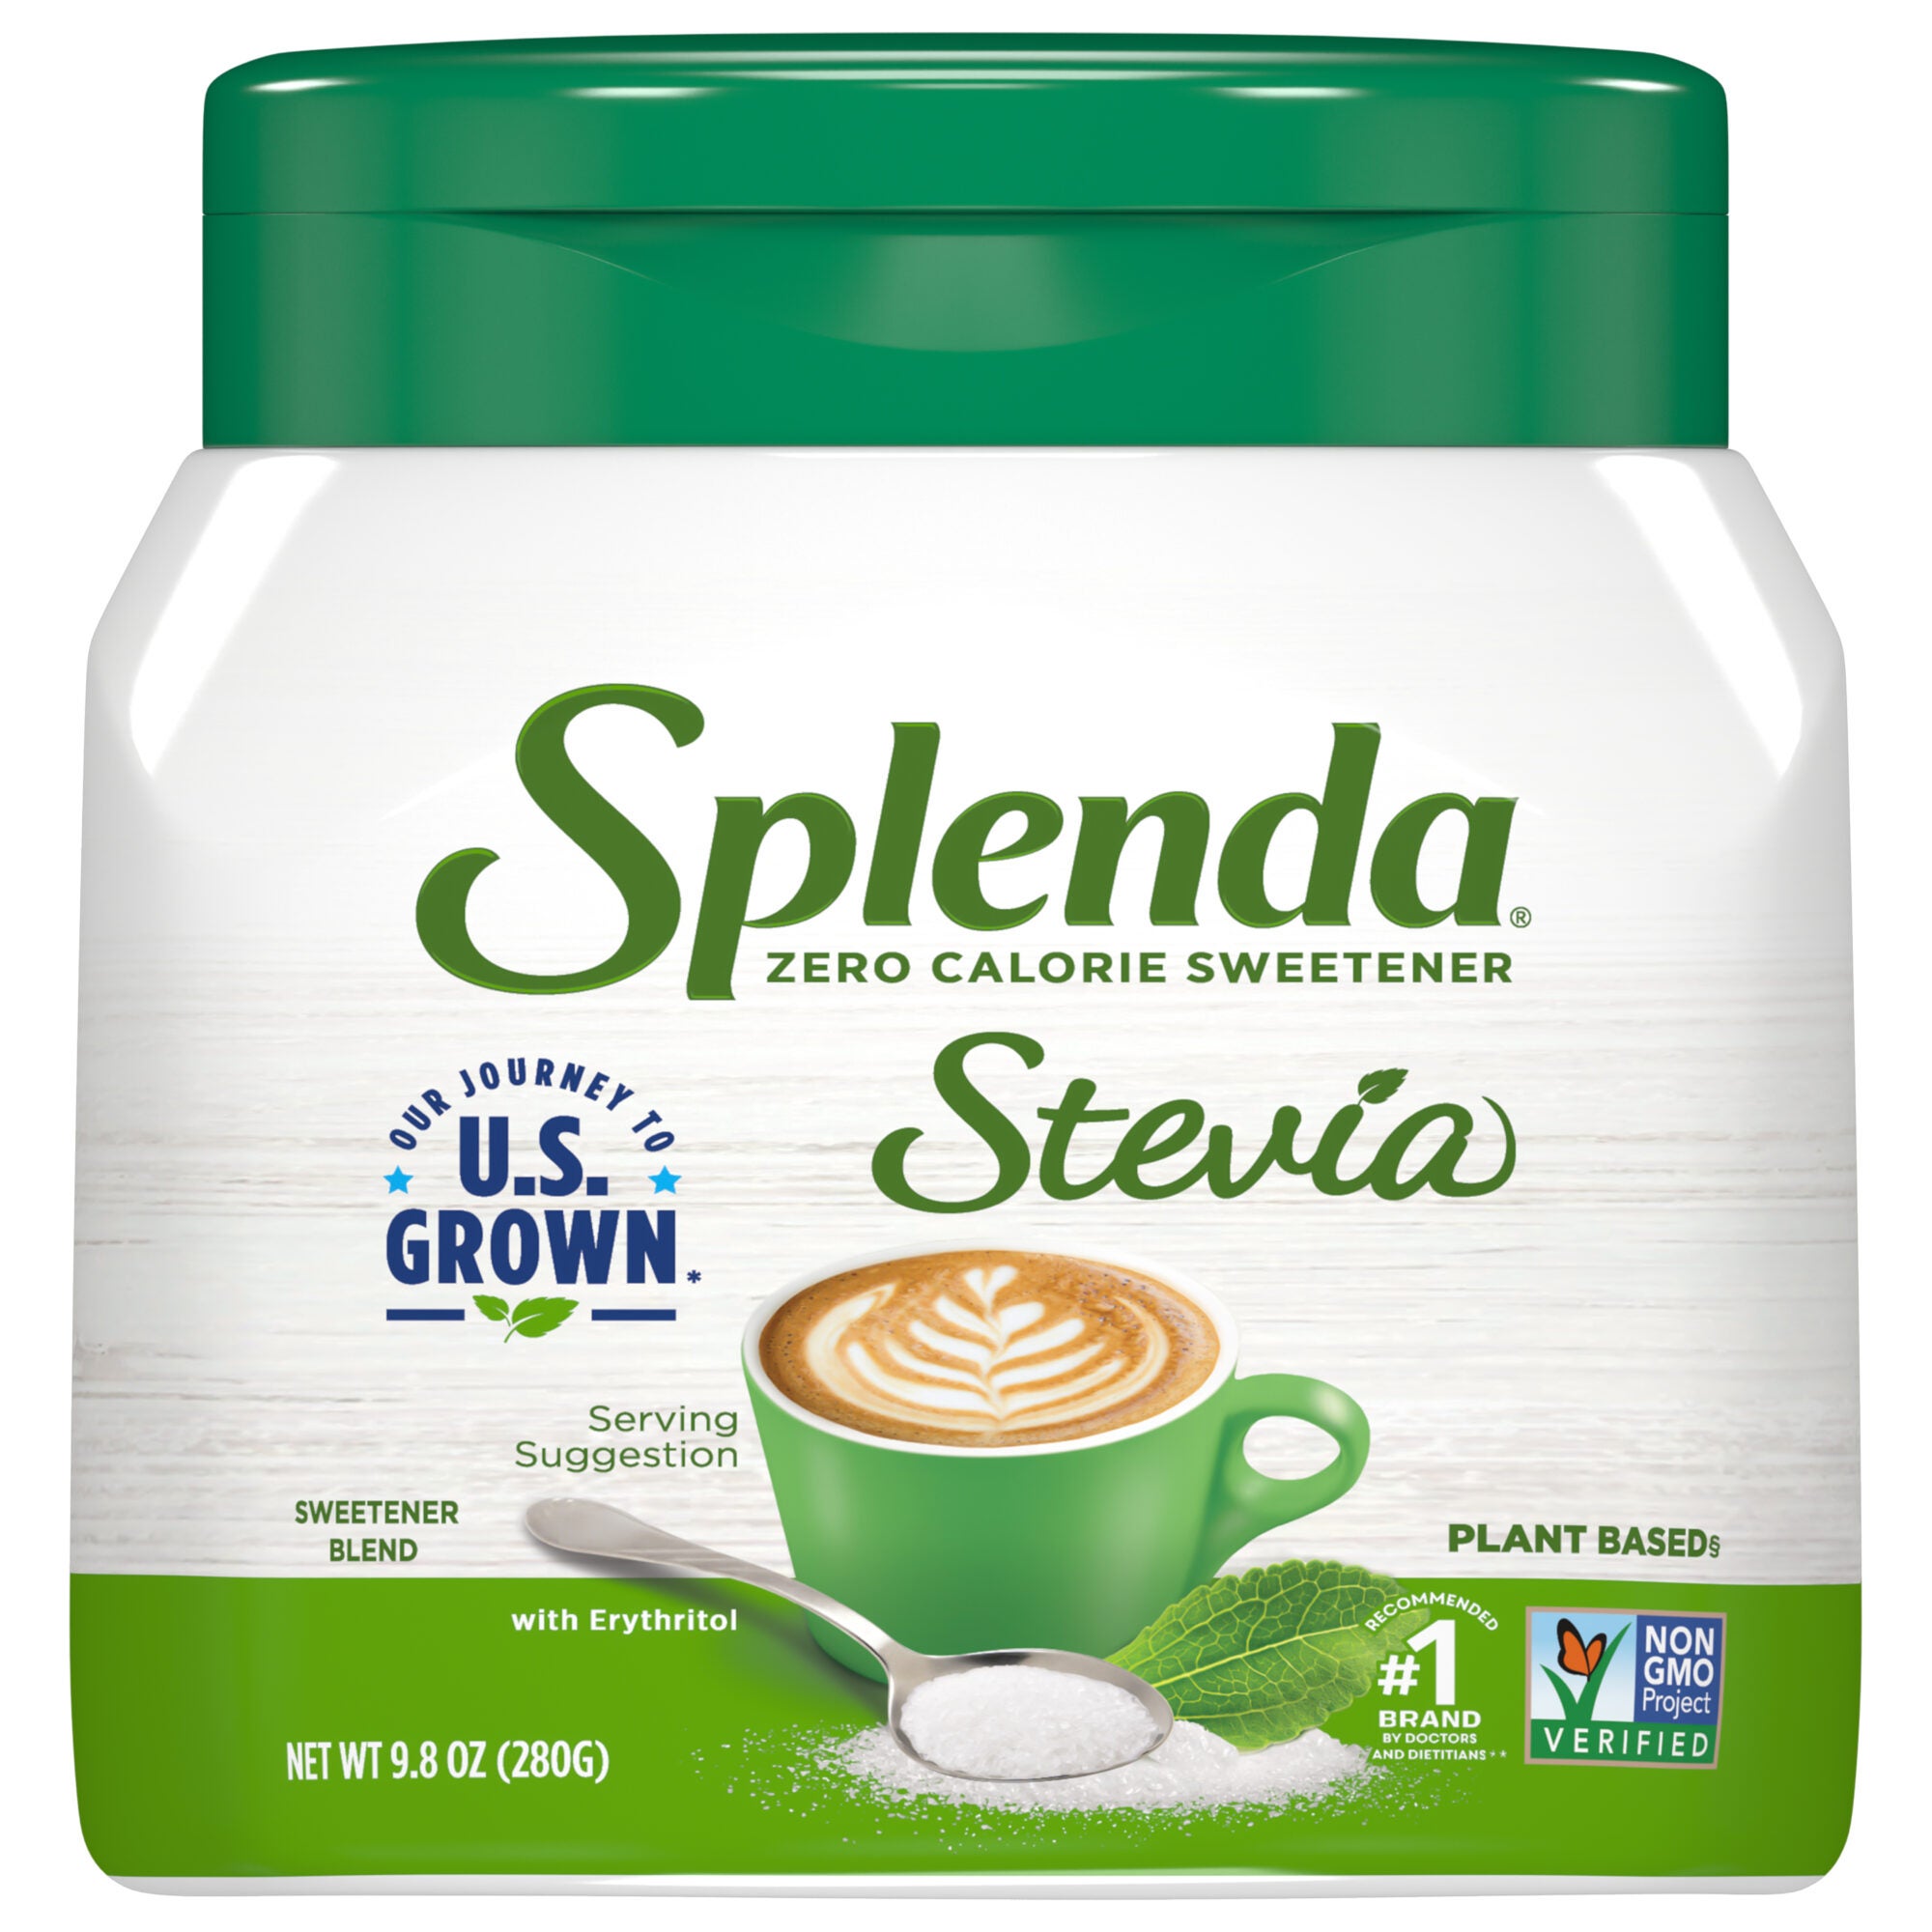 SPLENDA endulzante con Stevia, frasco de 9.8 oz - frente